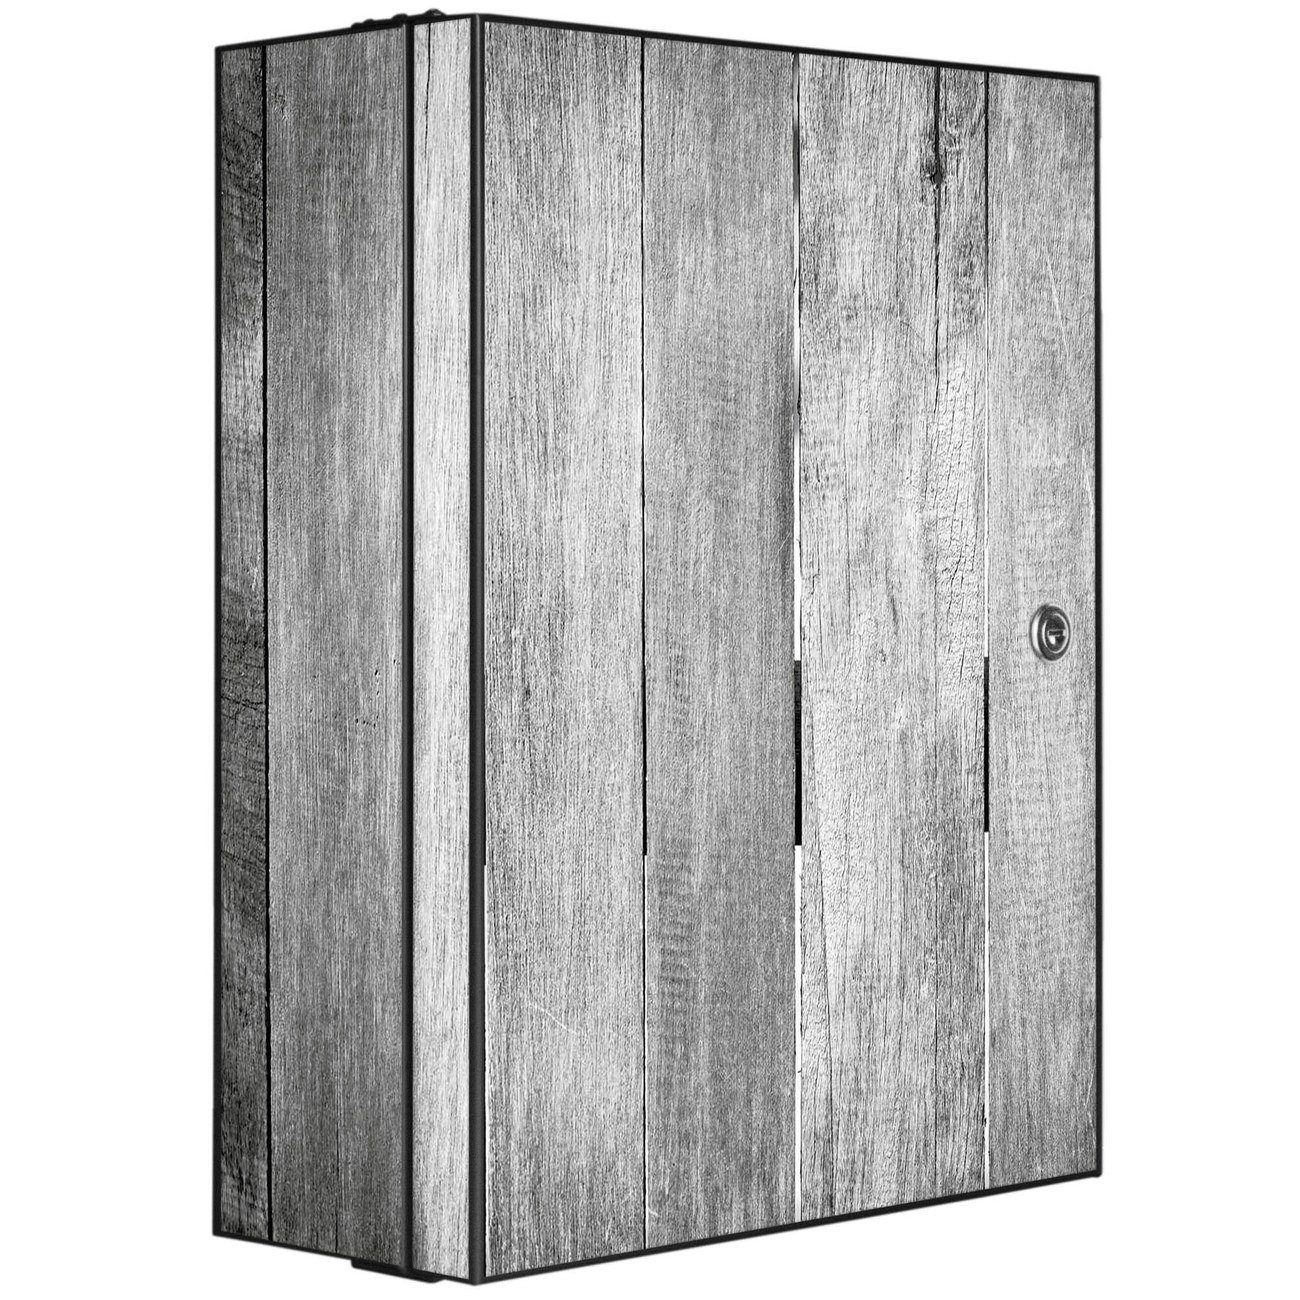 banjado Medizinschrank Stahl Holz Monochrom (abschließbar, 3 große und 2 kleine Fächer) 35 x 46 x 15cm schwarz